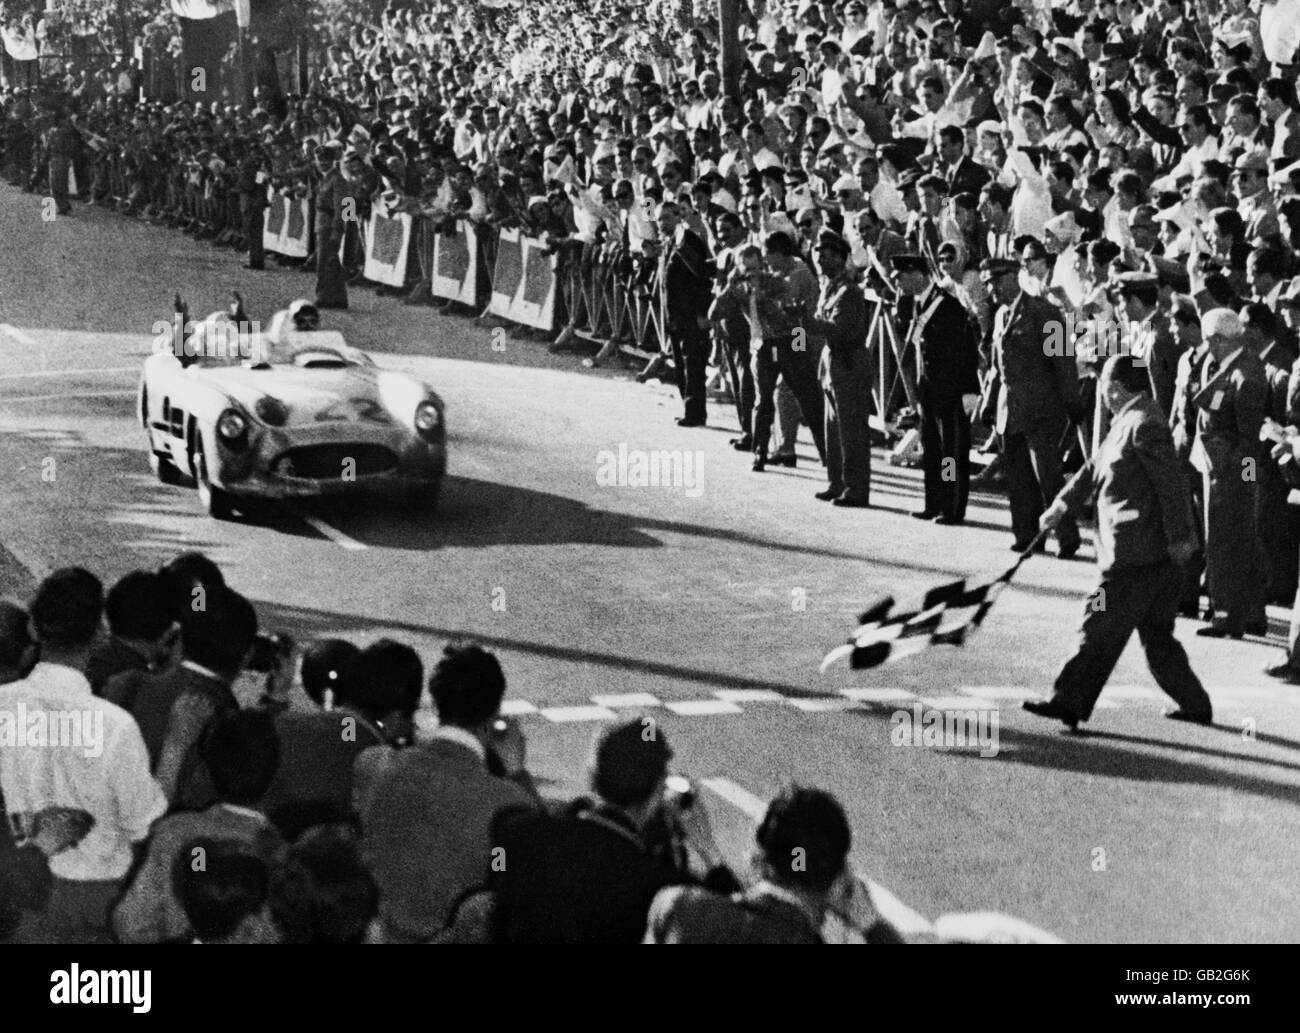 Stirling Moss, der große britische Fahrer, gewann als erster Brite das große italienische Rennen, die Mille Miglia, ein Rennen, das den größten Teil Italiens abdeckt, das er in 10 Stunden, 7 Minuten und 46 Sekunden mit seinem deutschen Mercedes Benz 994 Meilen zurücklegte, um einen neuen Rekord zu stellen. Bild zeigt Moss beim Überqueren der Ziellinie. Stockfoto